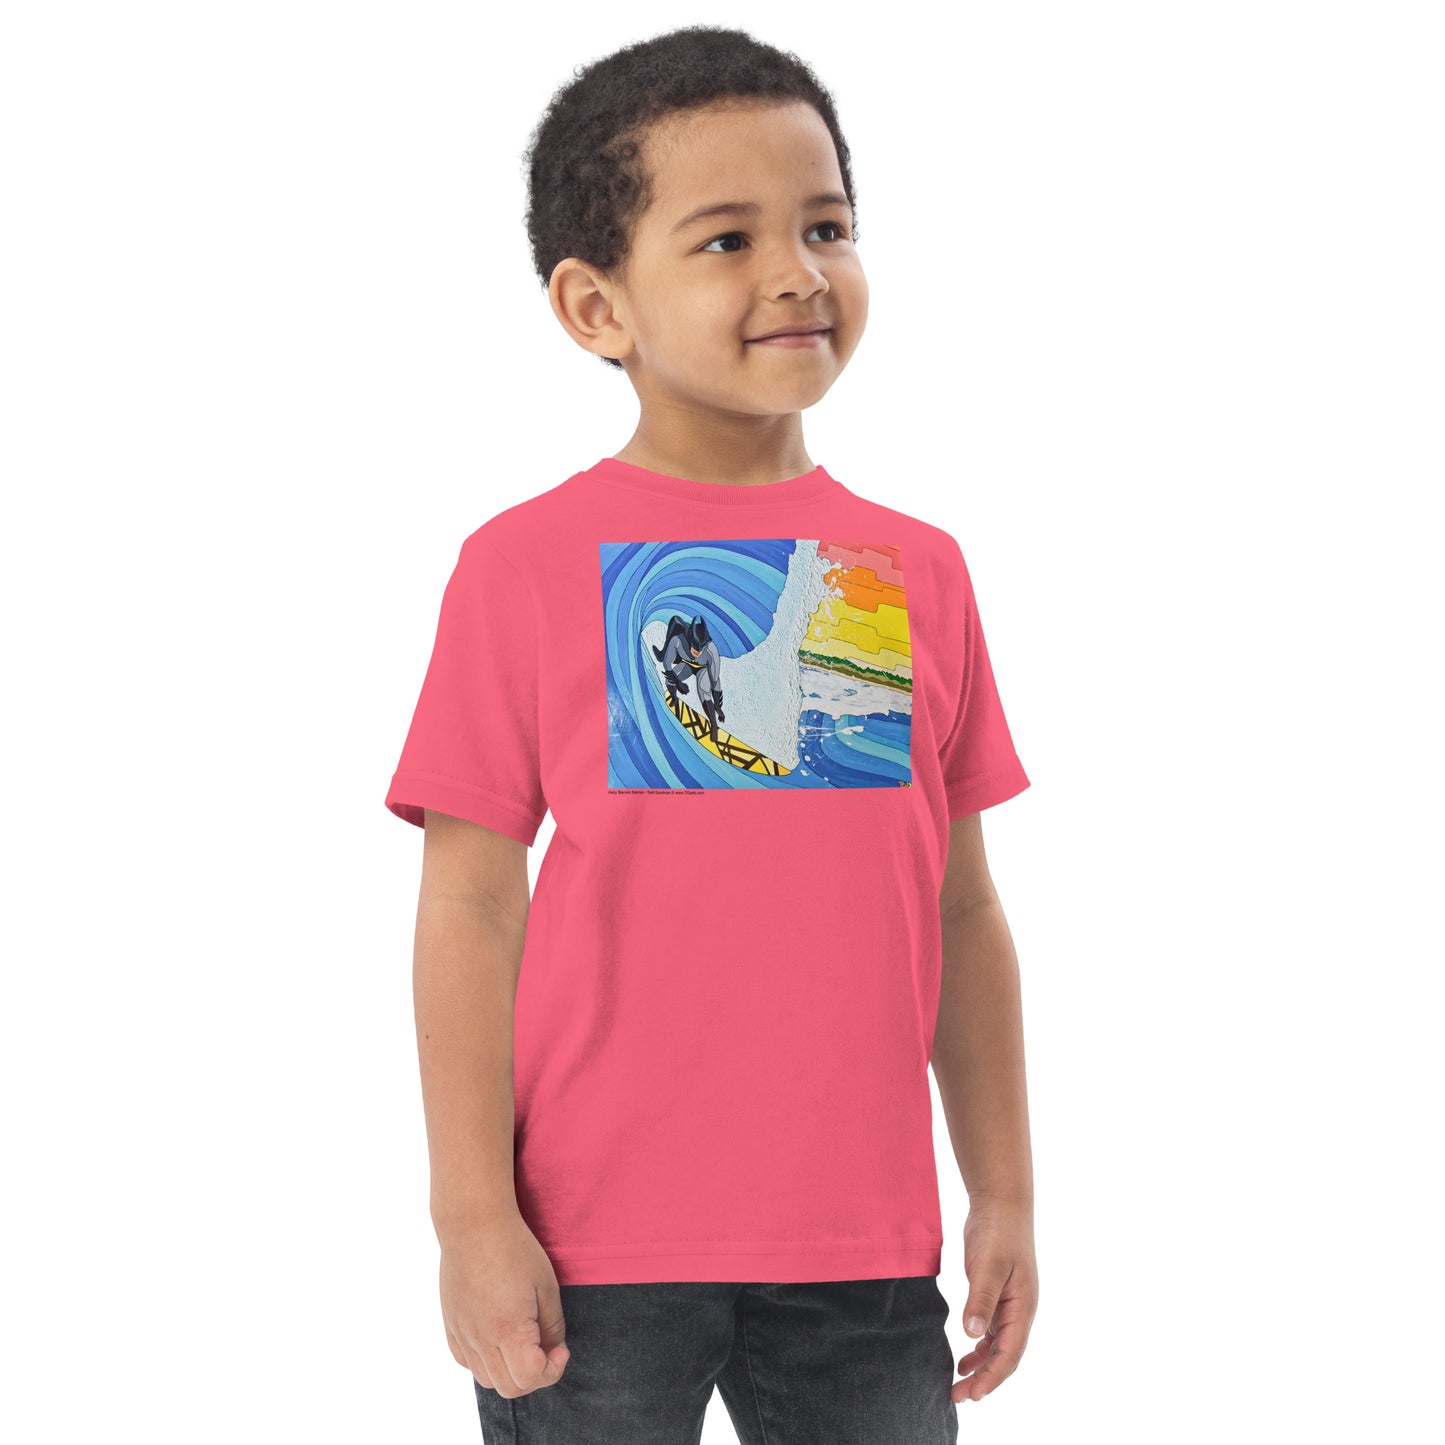 Holy Barrels Batman - Toddler jersey t-shirt